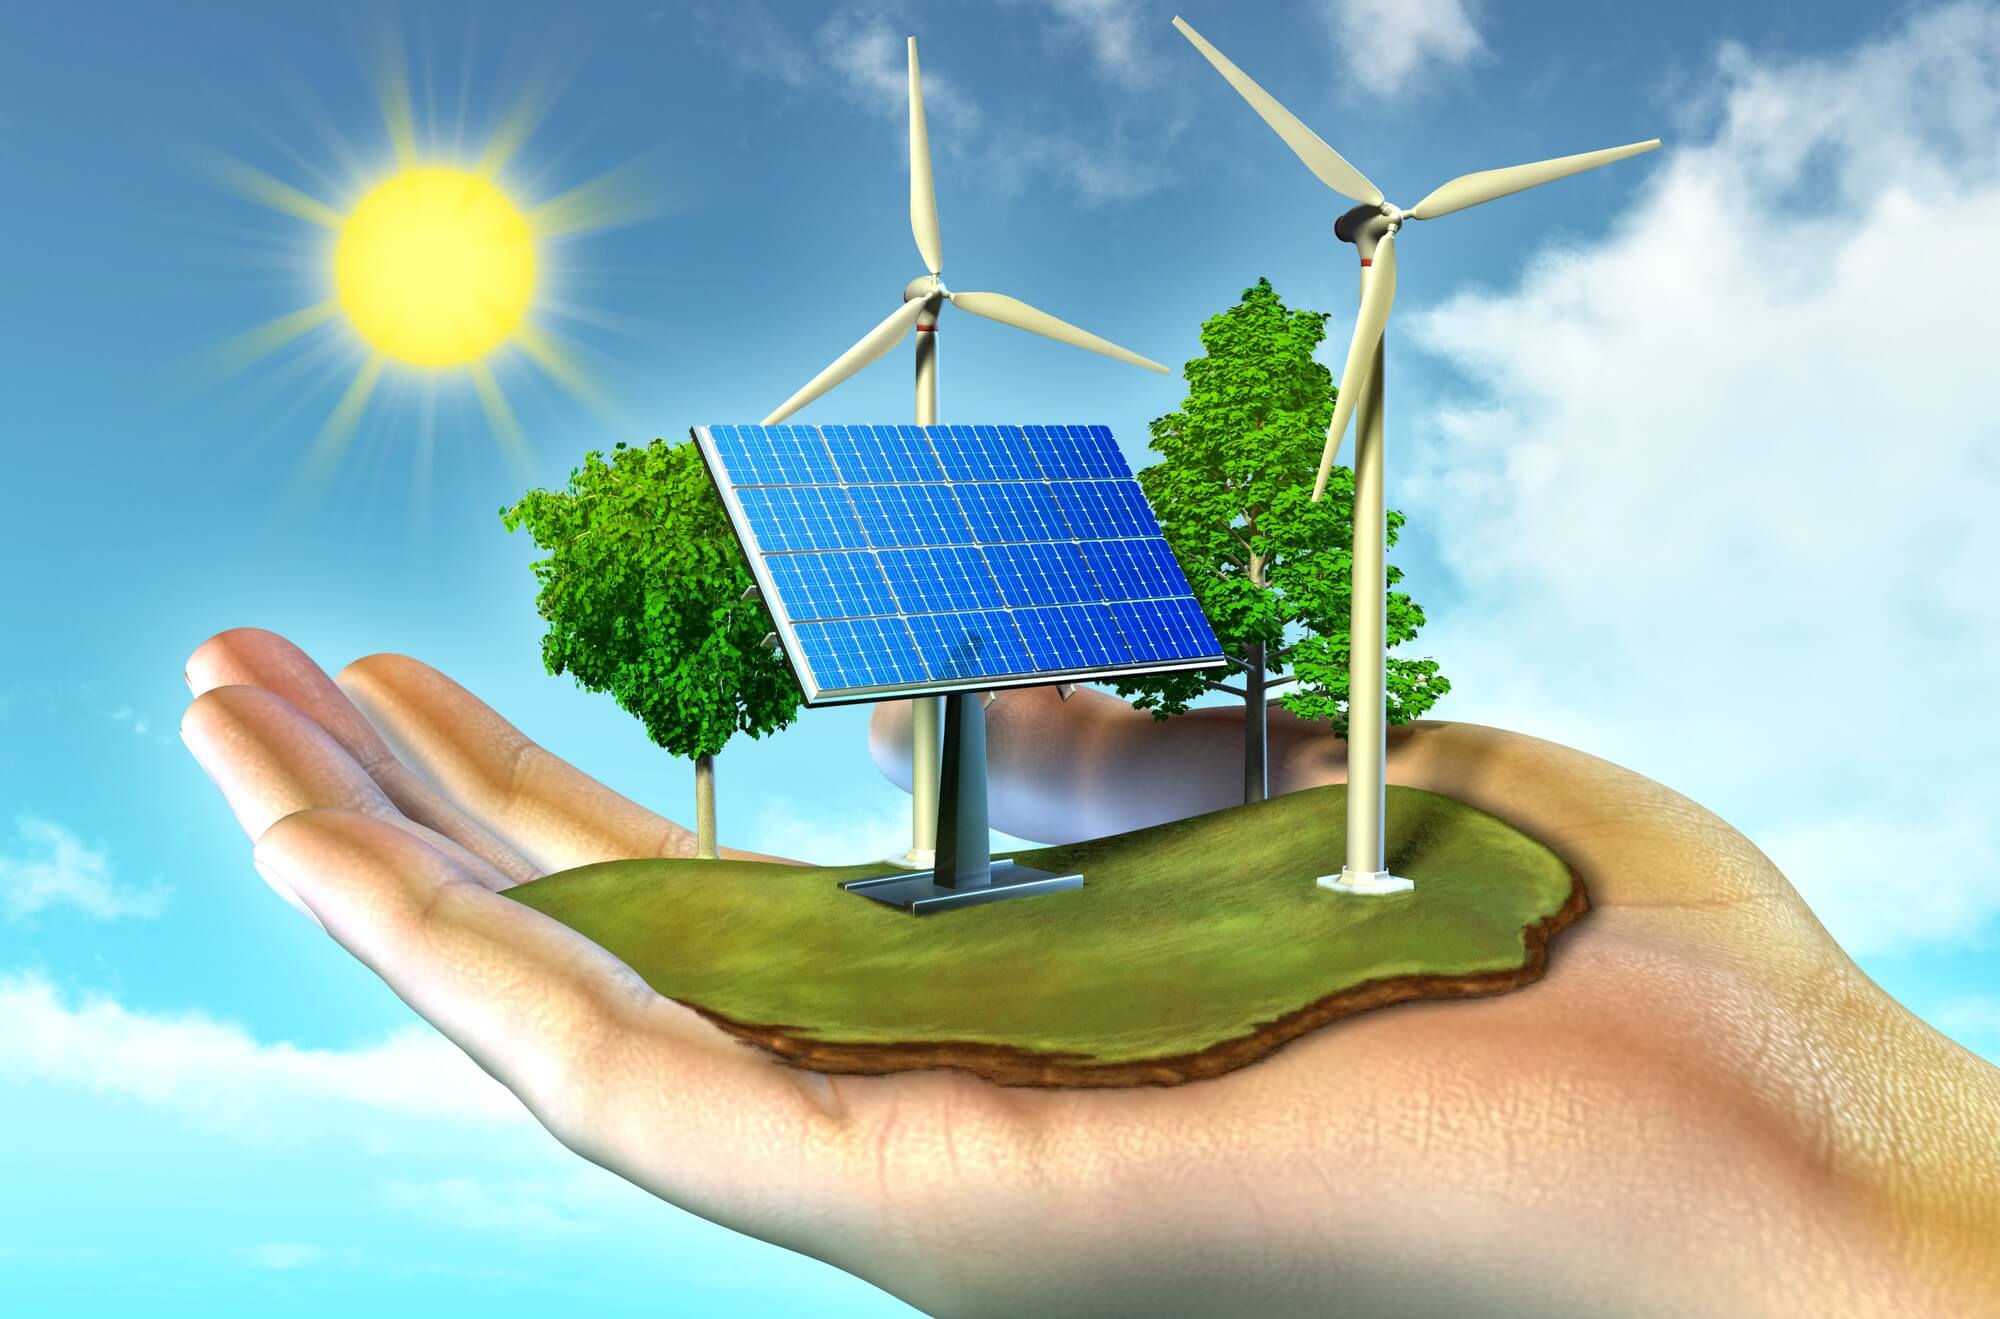 Salvarán las energías renovables el planeta? - Con I de Intelligente